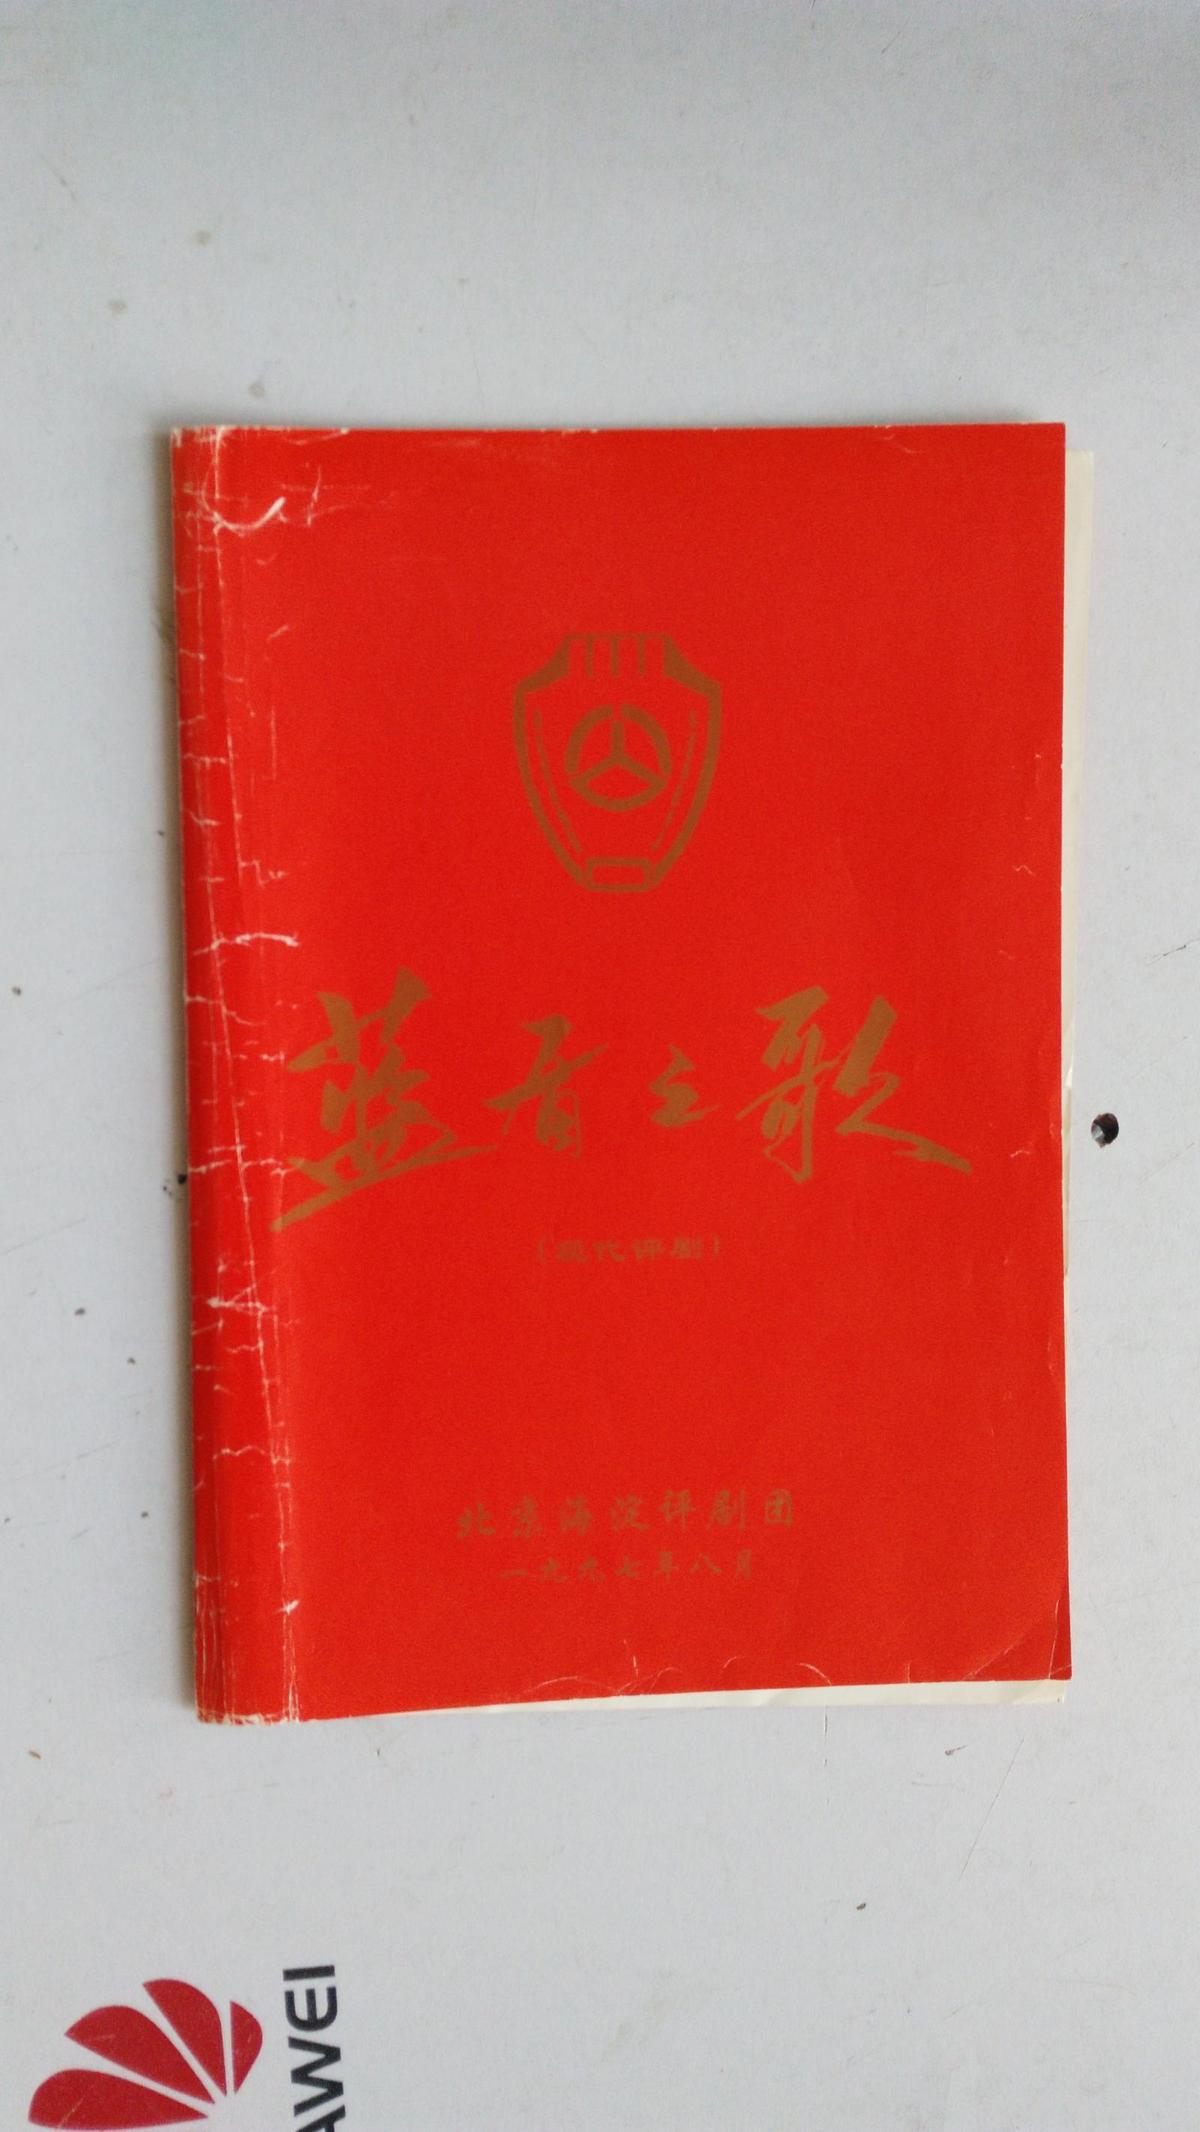 评剧节目单   现代评剧   蓝盾之歌    北京海淀评剧团   1997年8月